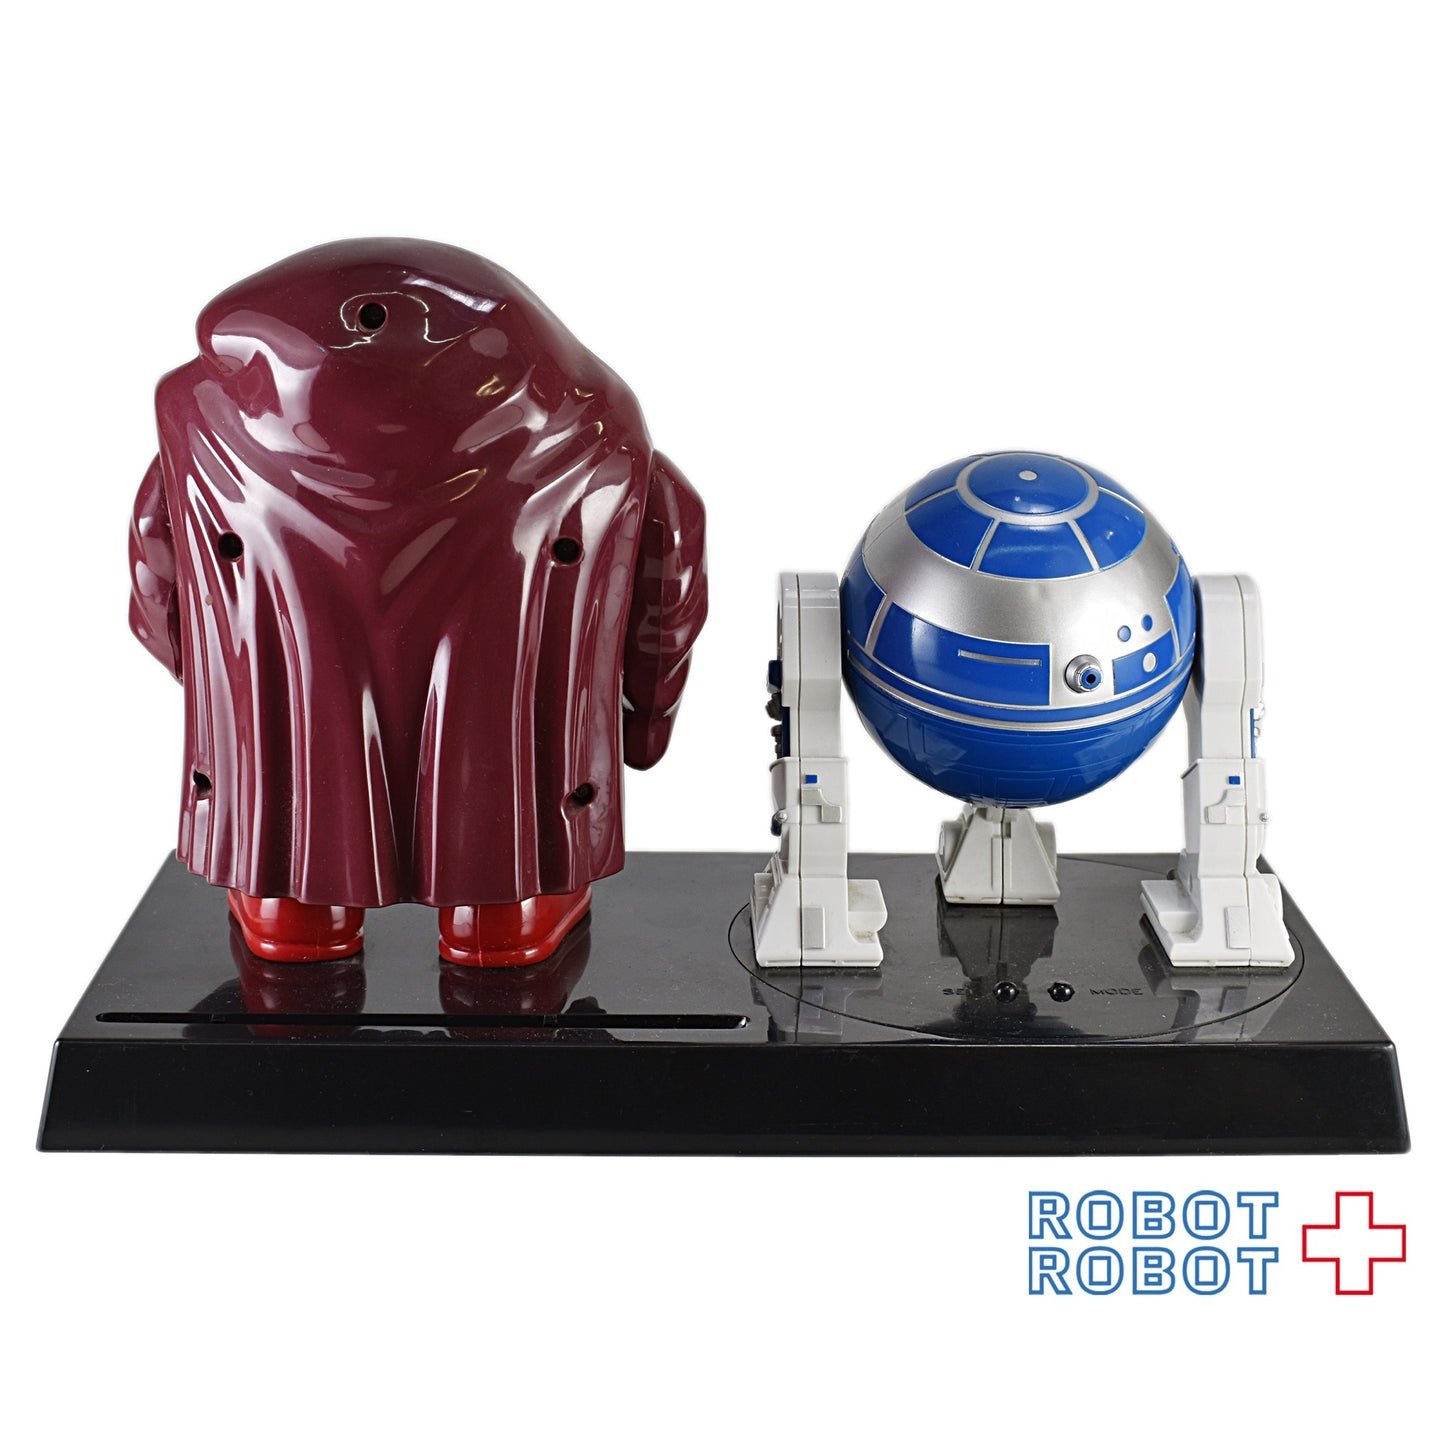 M&M's スター・ウォーズ R2-D2 & アナキン プロジェクタークロック エムアンドエムズ